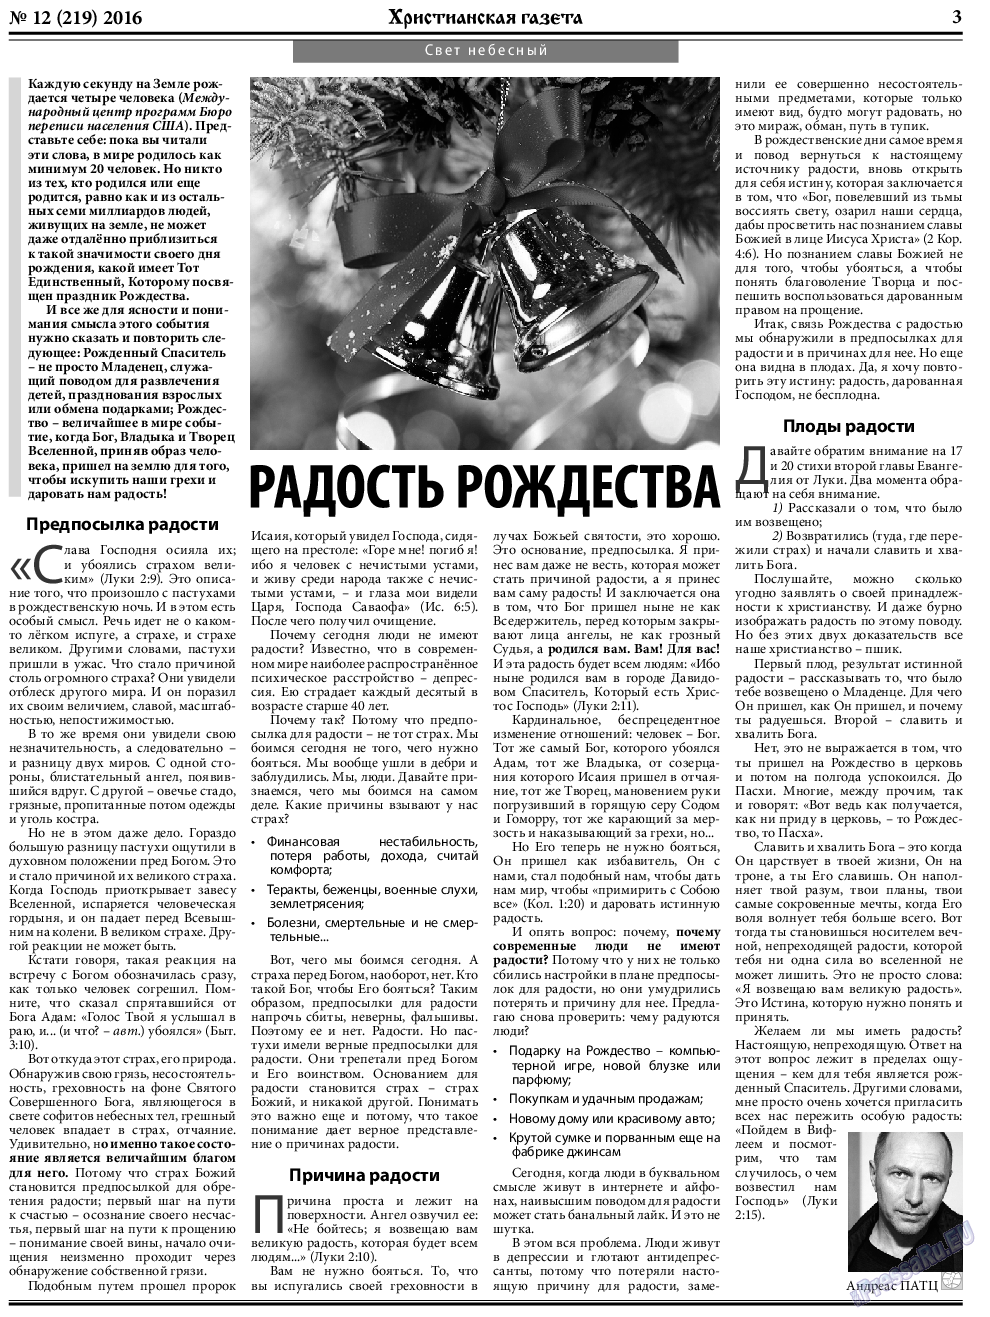 Христианская газета, газета. 2016 №12 стр.3